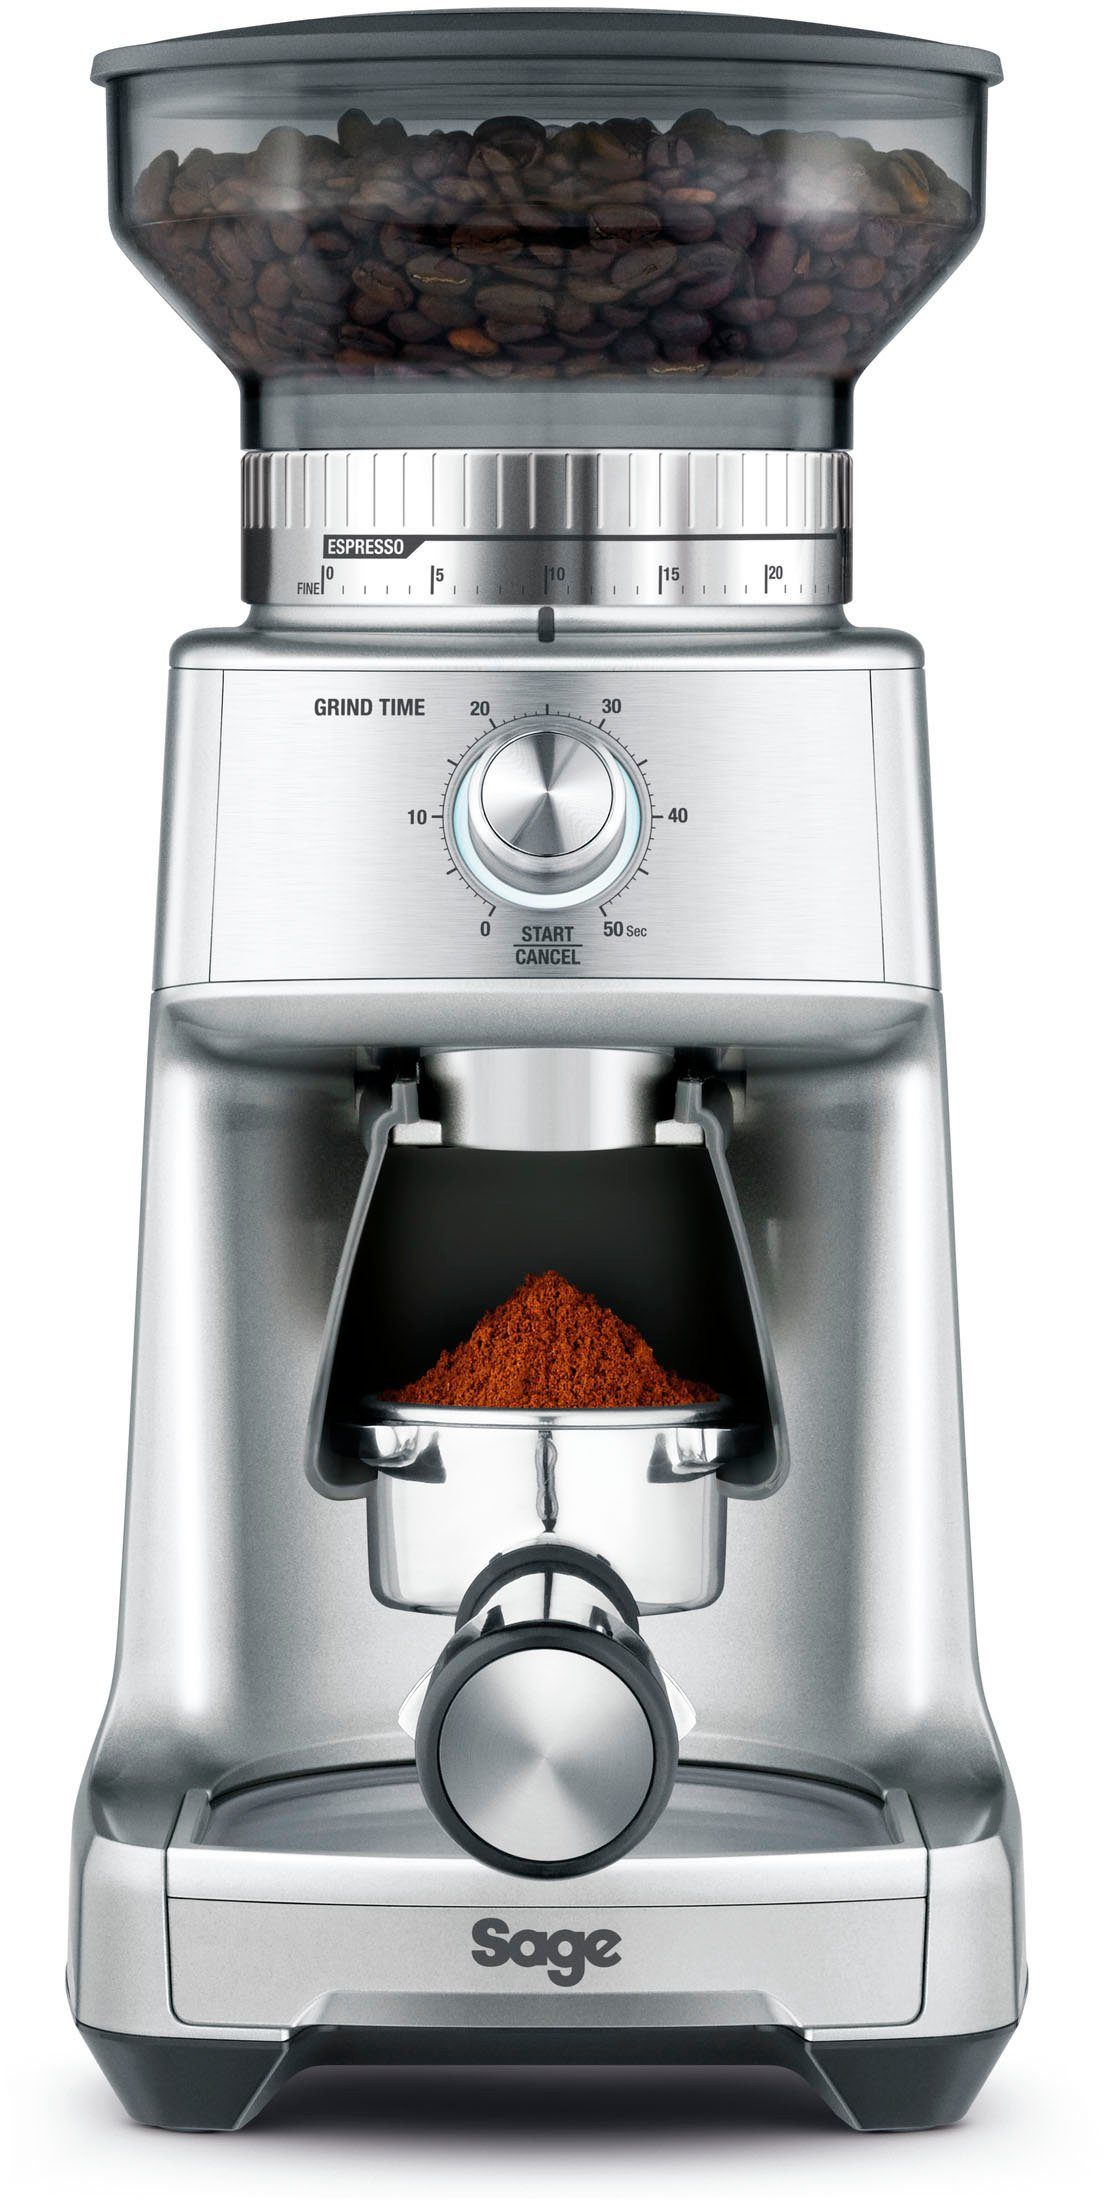 Sage Kaffeemühle the Dose Control SCG600SIL, 350 240 Pro W, g Bohnenbehälter Kegelmahlwerk